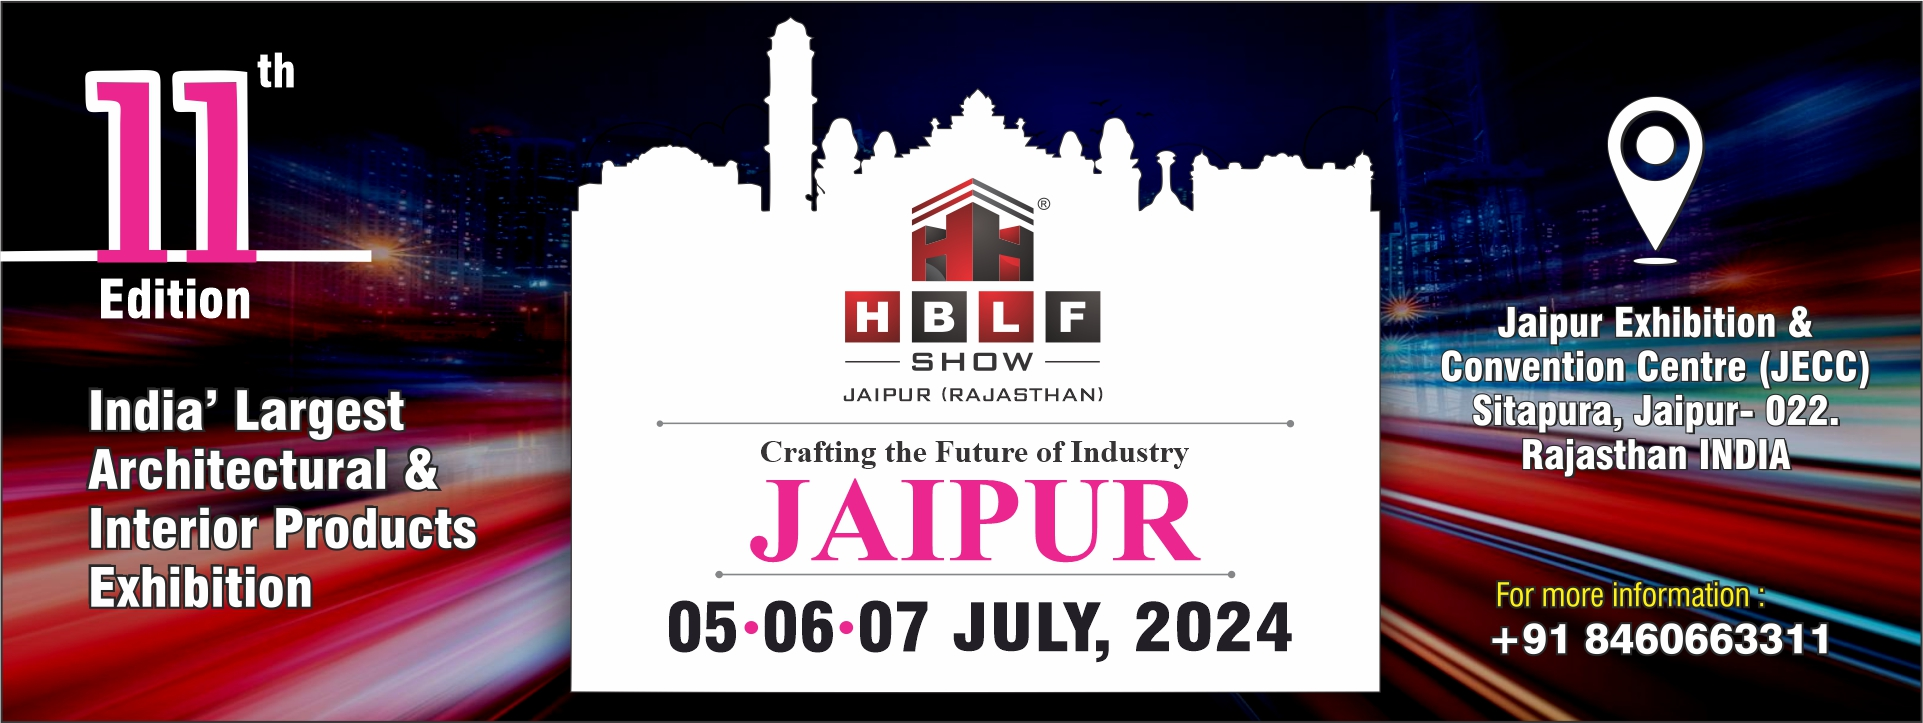 Hblf Show Jaipur 2024